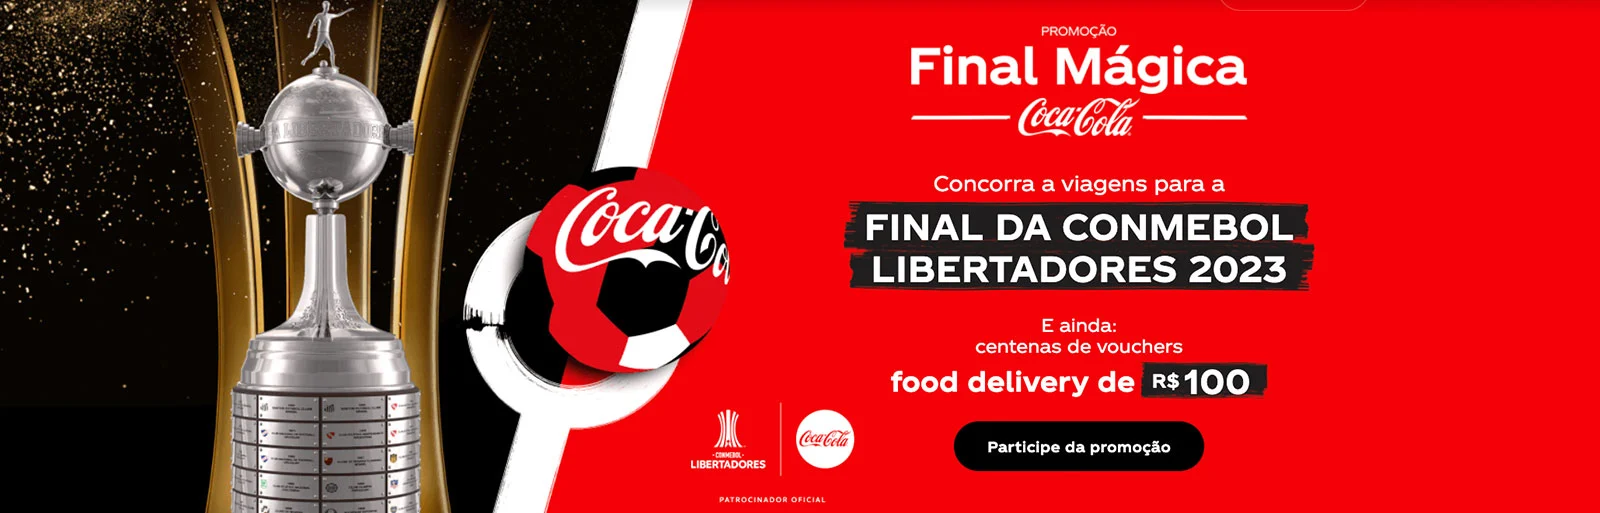 Promoção Coca-Cola 2023 Final Mágica